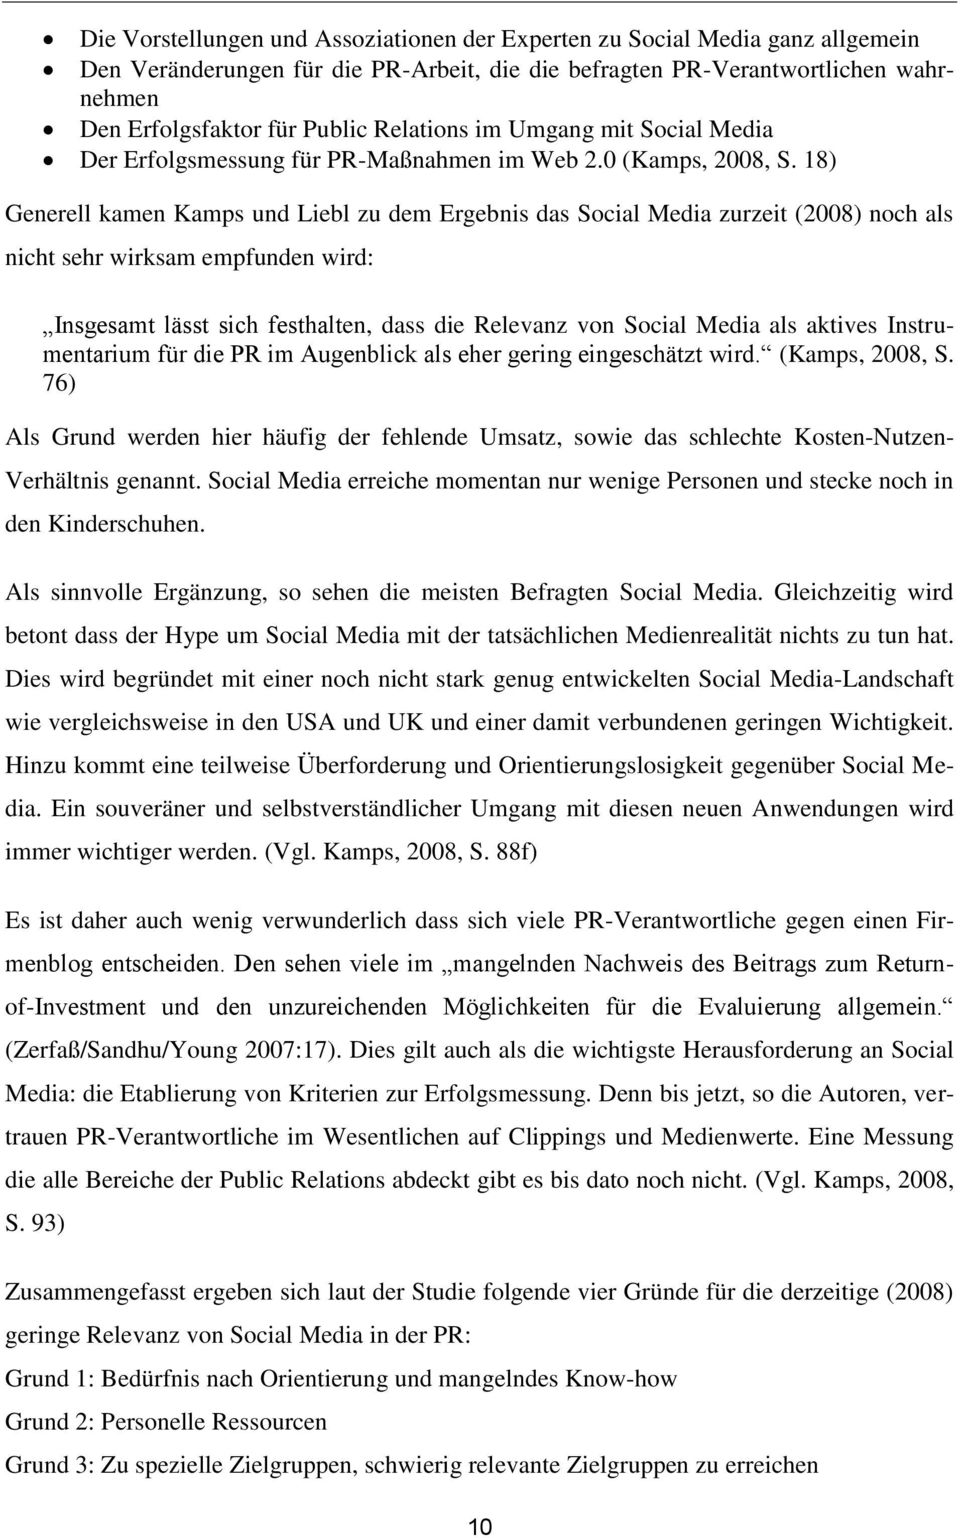 18) Generell kamen Kamps und Liebl zu dem Ergebnis das Social Media zurzeit (2008) noch als nicht sehr wirksam empfunden wird: Insgesamt lässt sich festhalten, dass die Relevanz von Social Media als